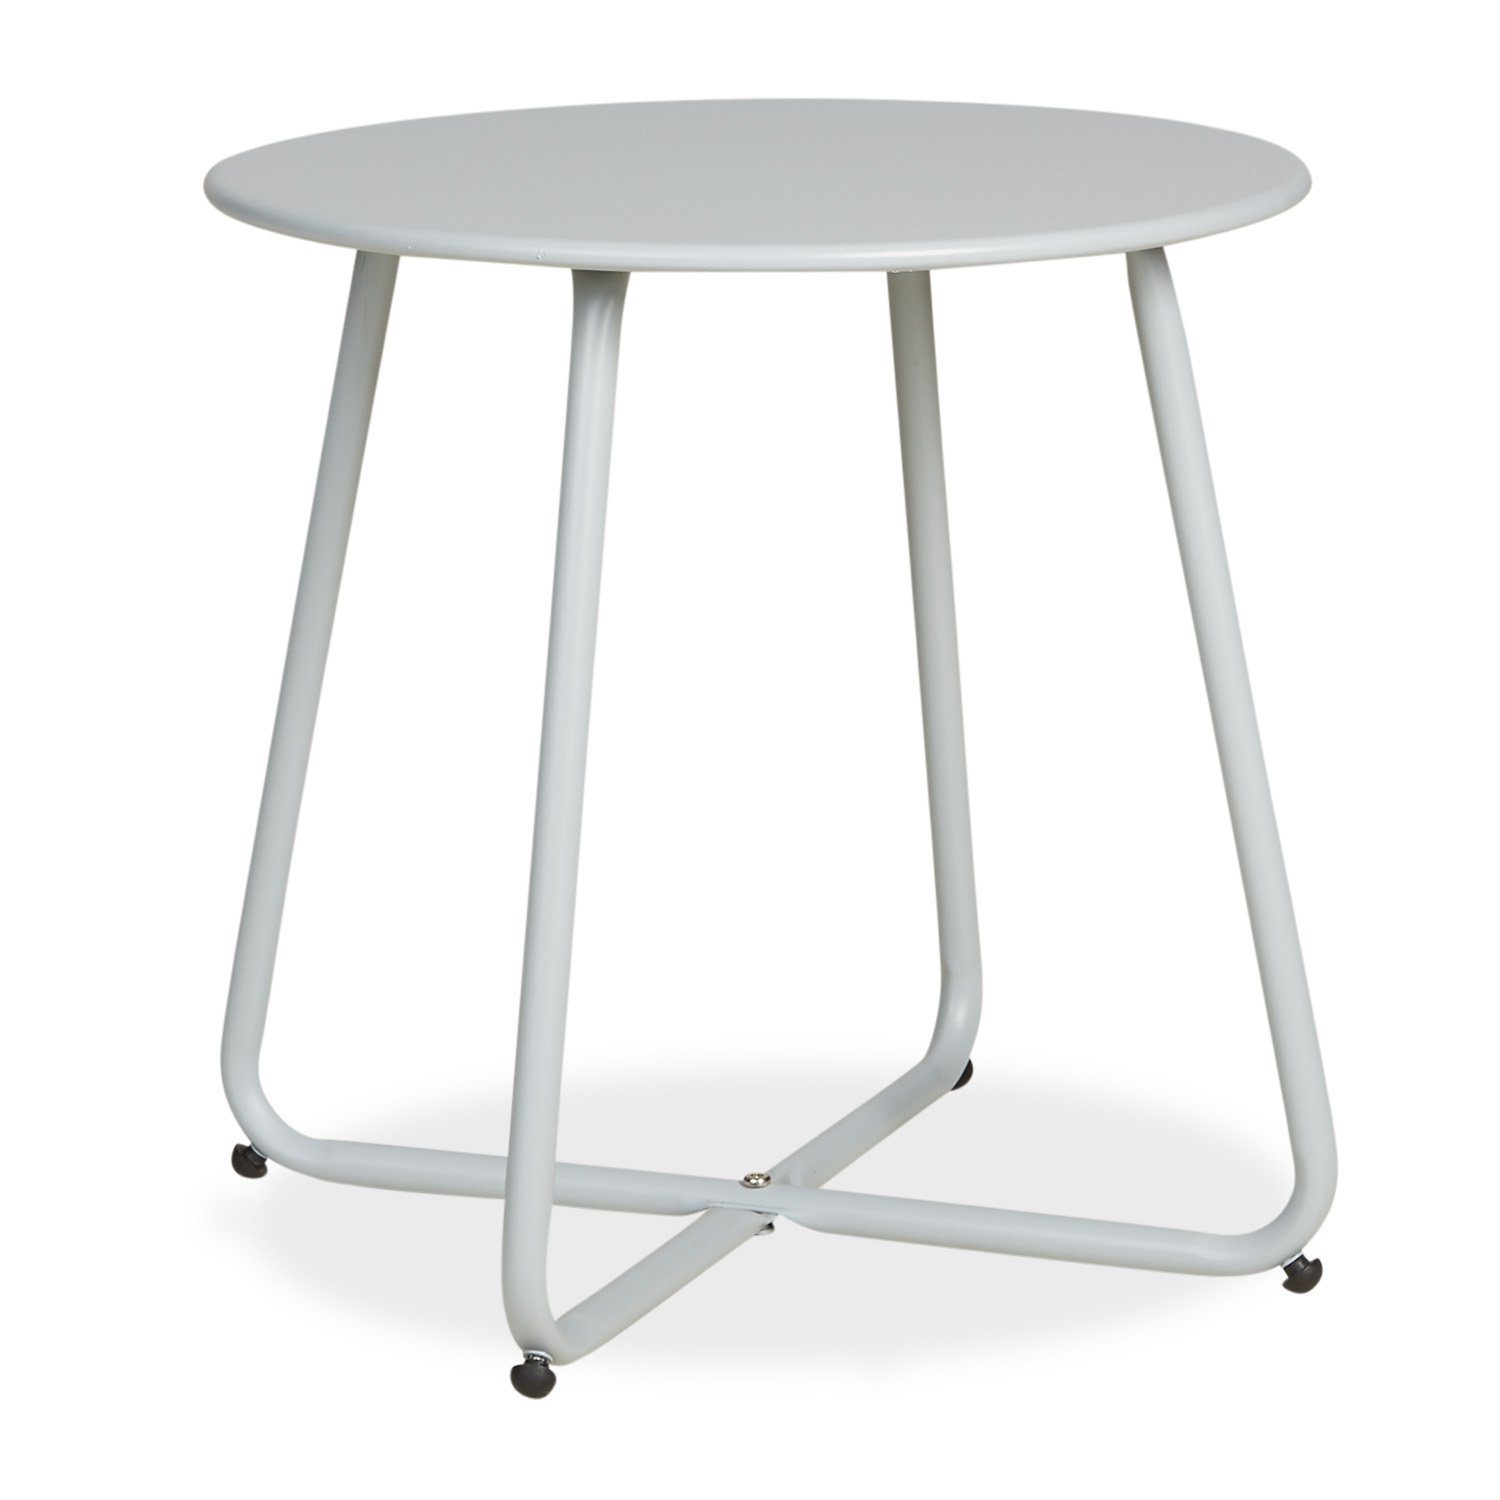 Homestyle4u Beistelltisch Gartentisch Rund Metall Tisch Kaffeetisch (kein Set) grau | grau | grau | Ablagetische